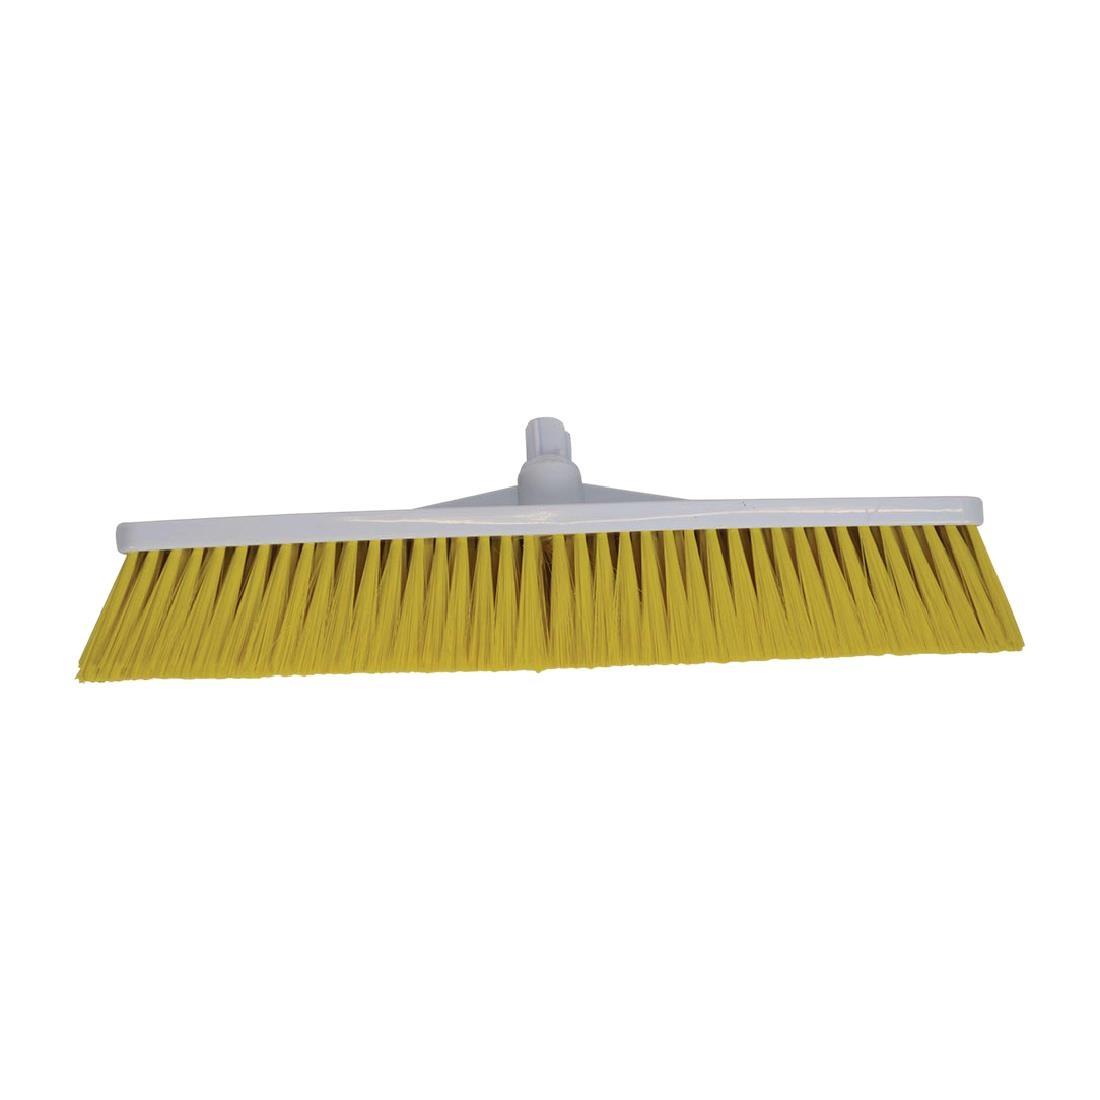 SYR Hygiene Broom Head Soft Bristle Yellow - L871  - 1